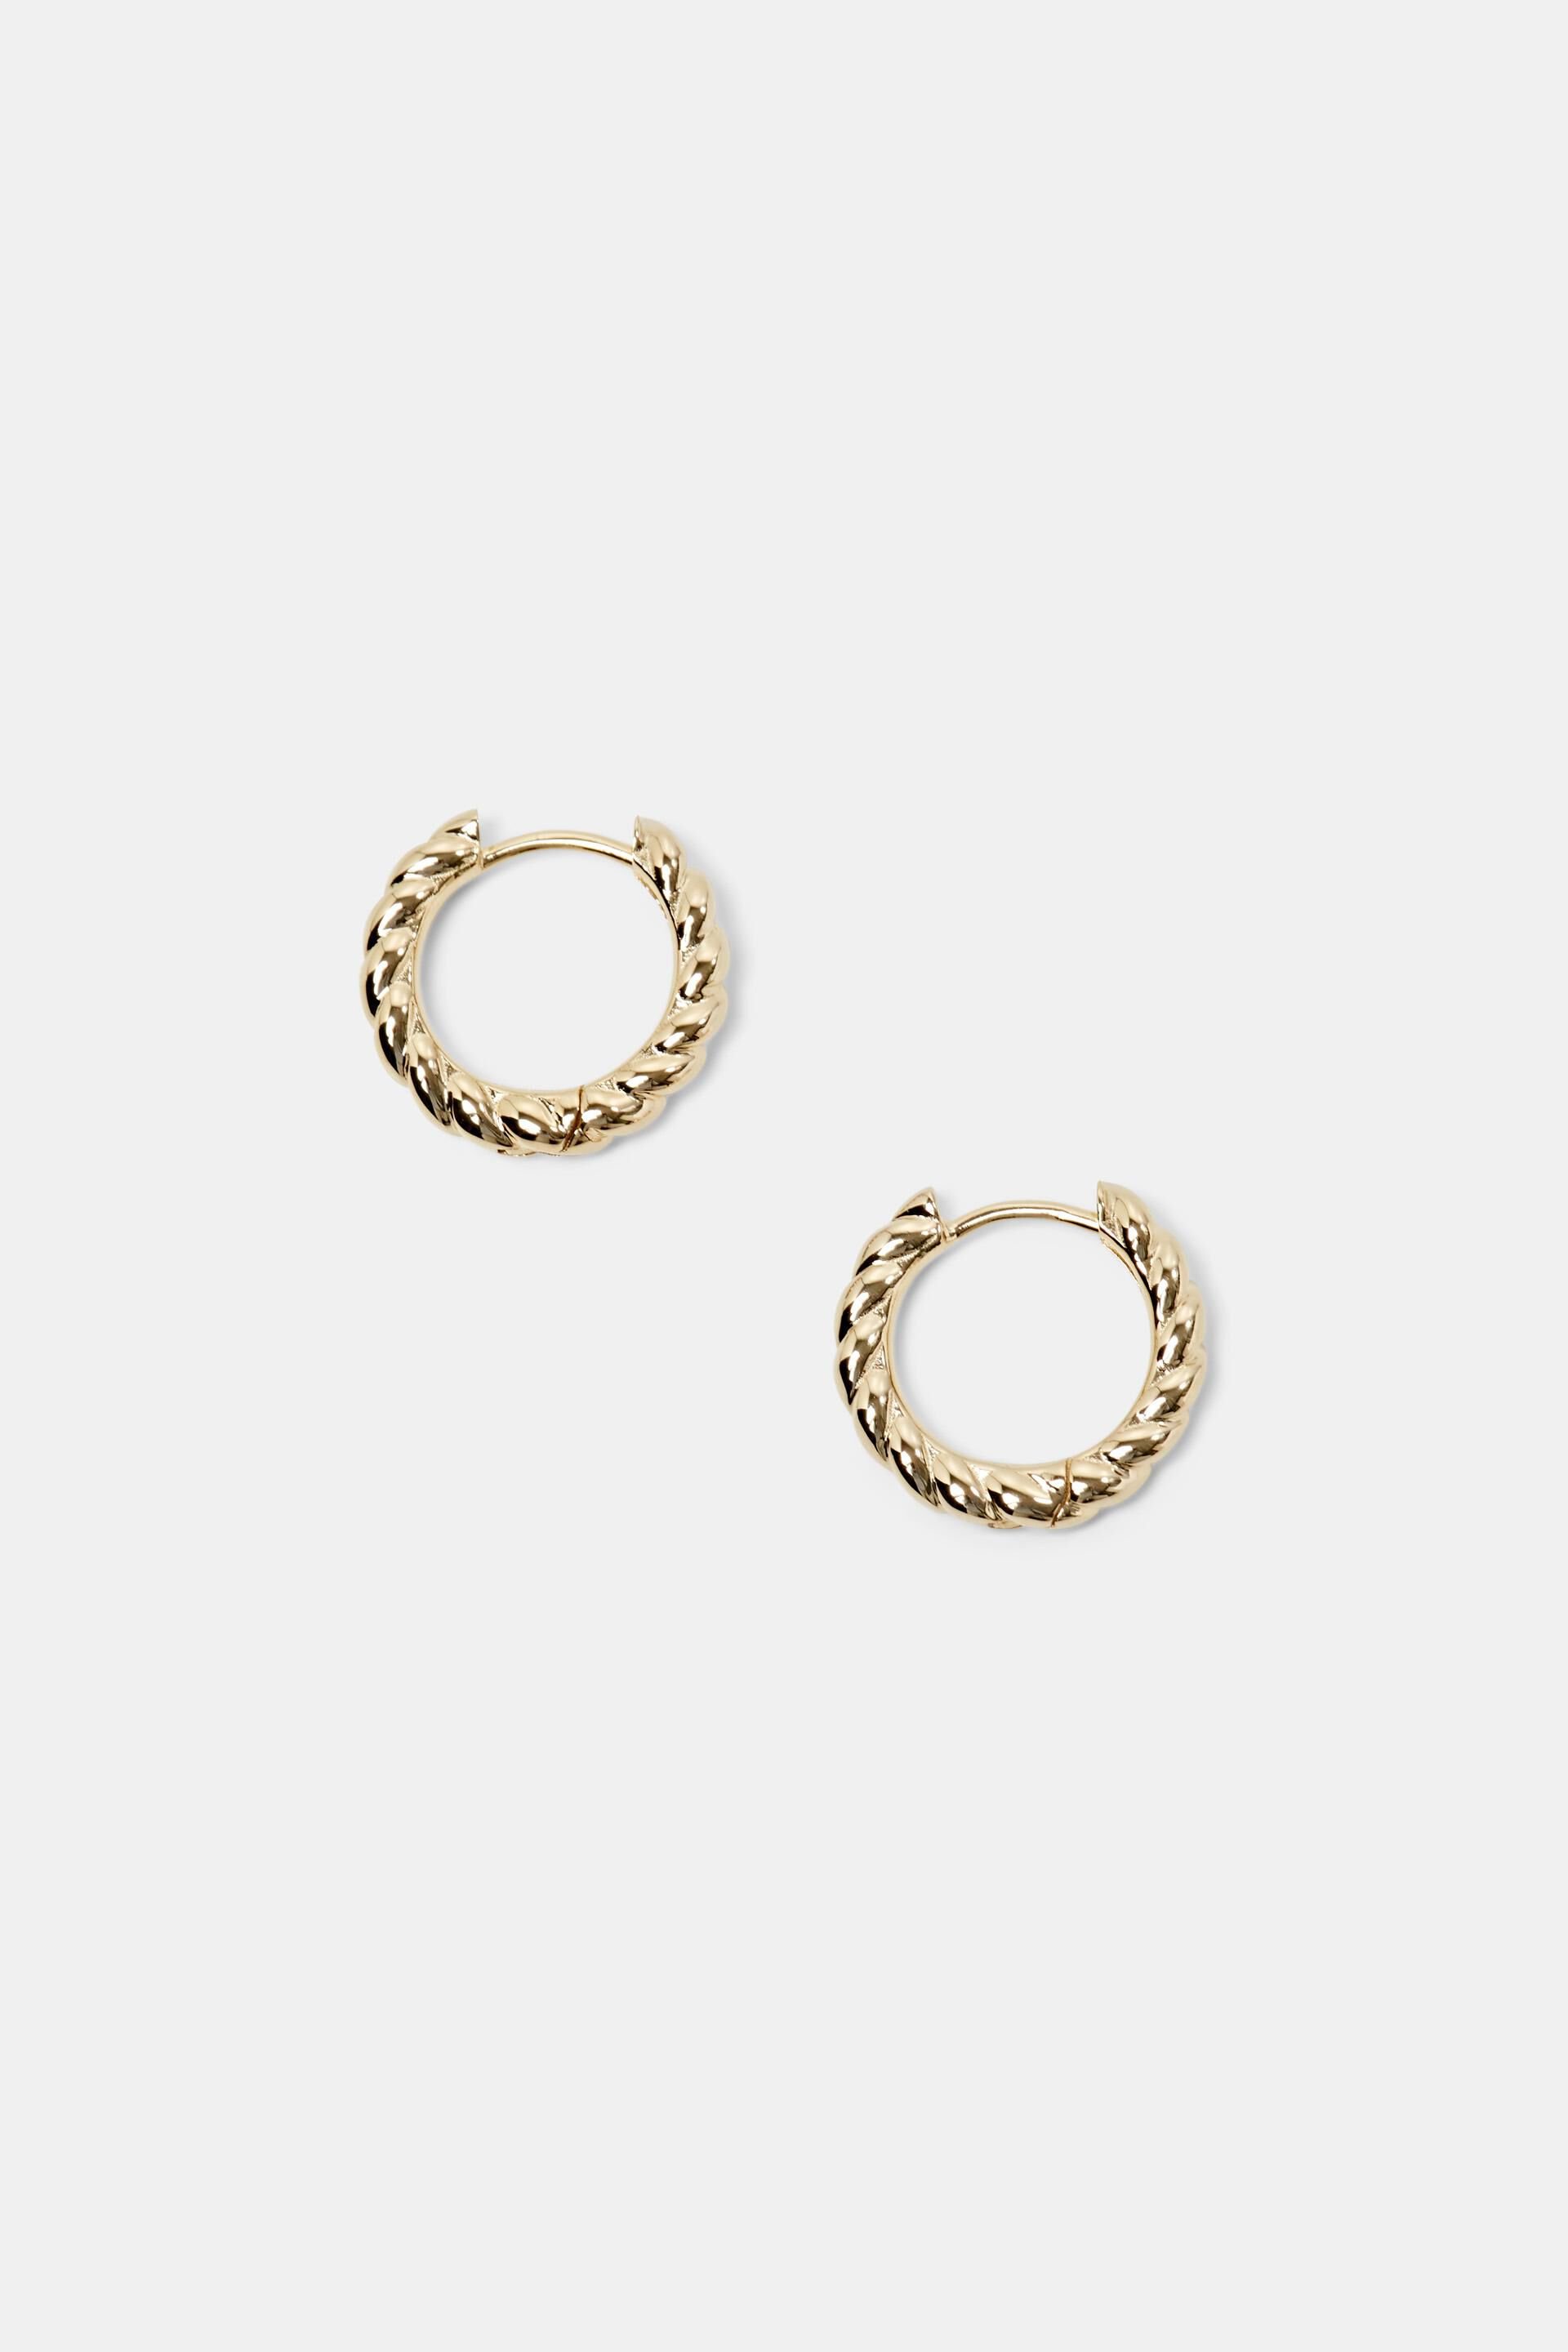 Esprit Earrings Twisted Gold-Tone Hoop